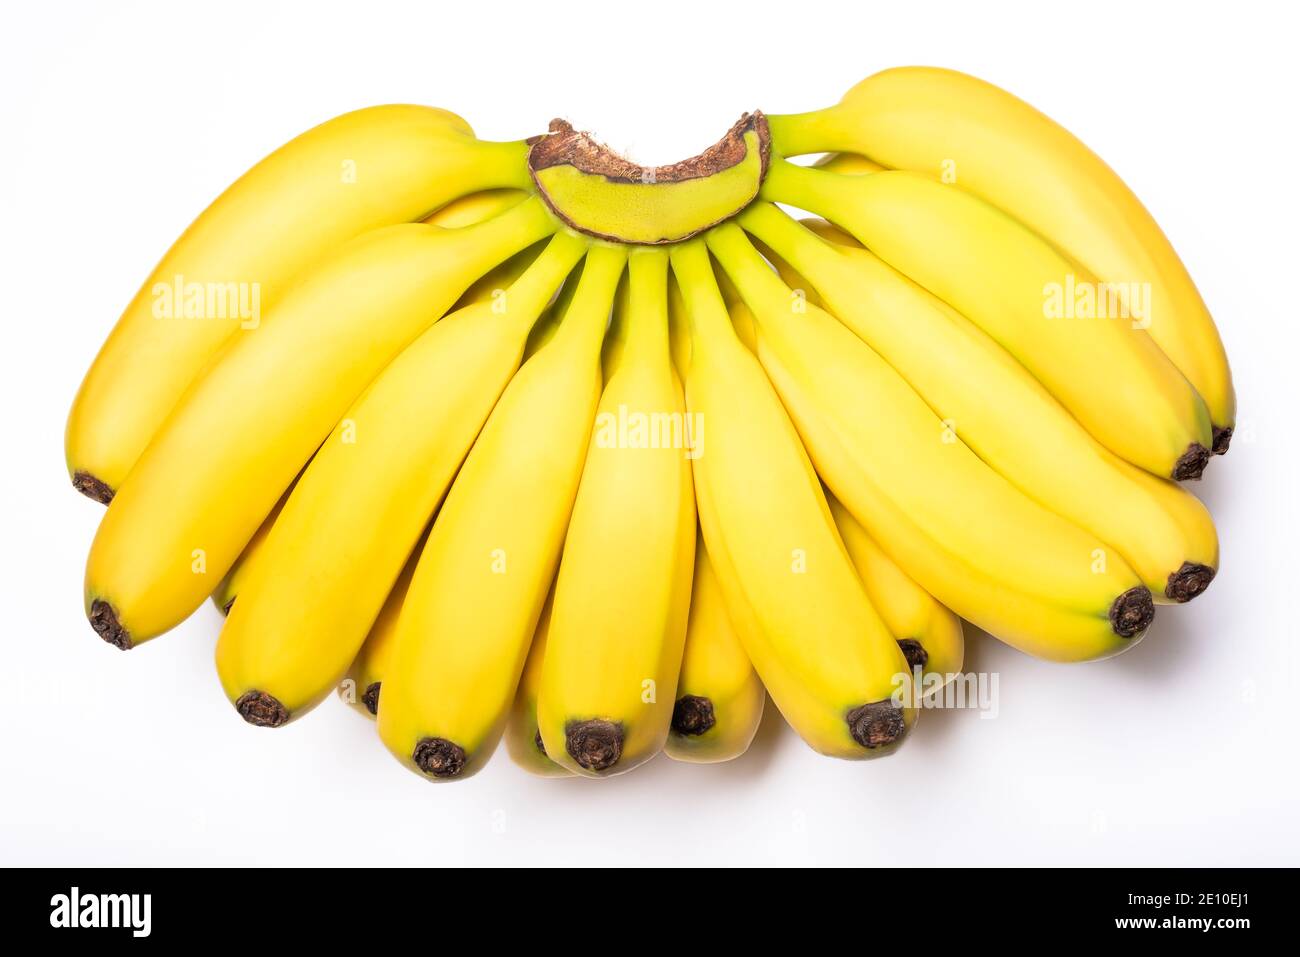 https://c8.alamy.com/comp/2E10EJ1/a-bunch-of-bananas-close-up-view-on-white-background-2E10EJ1.jpg